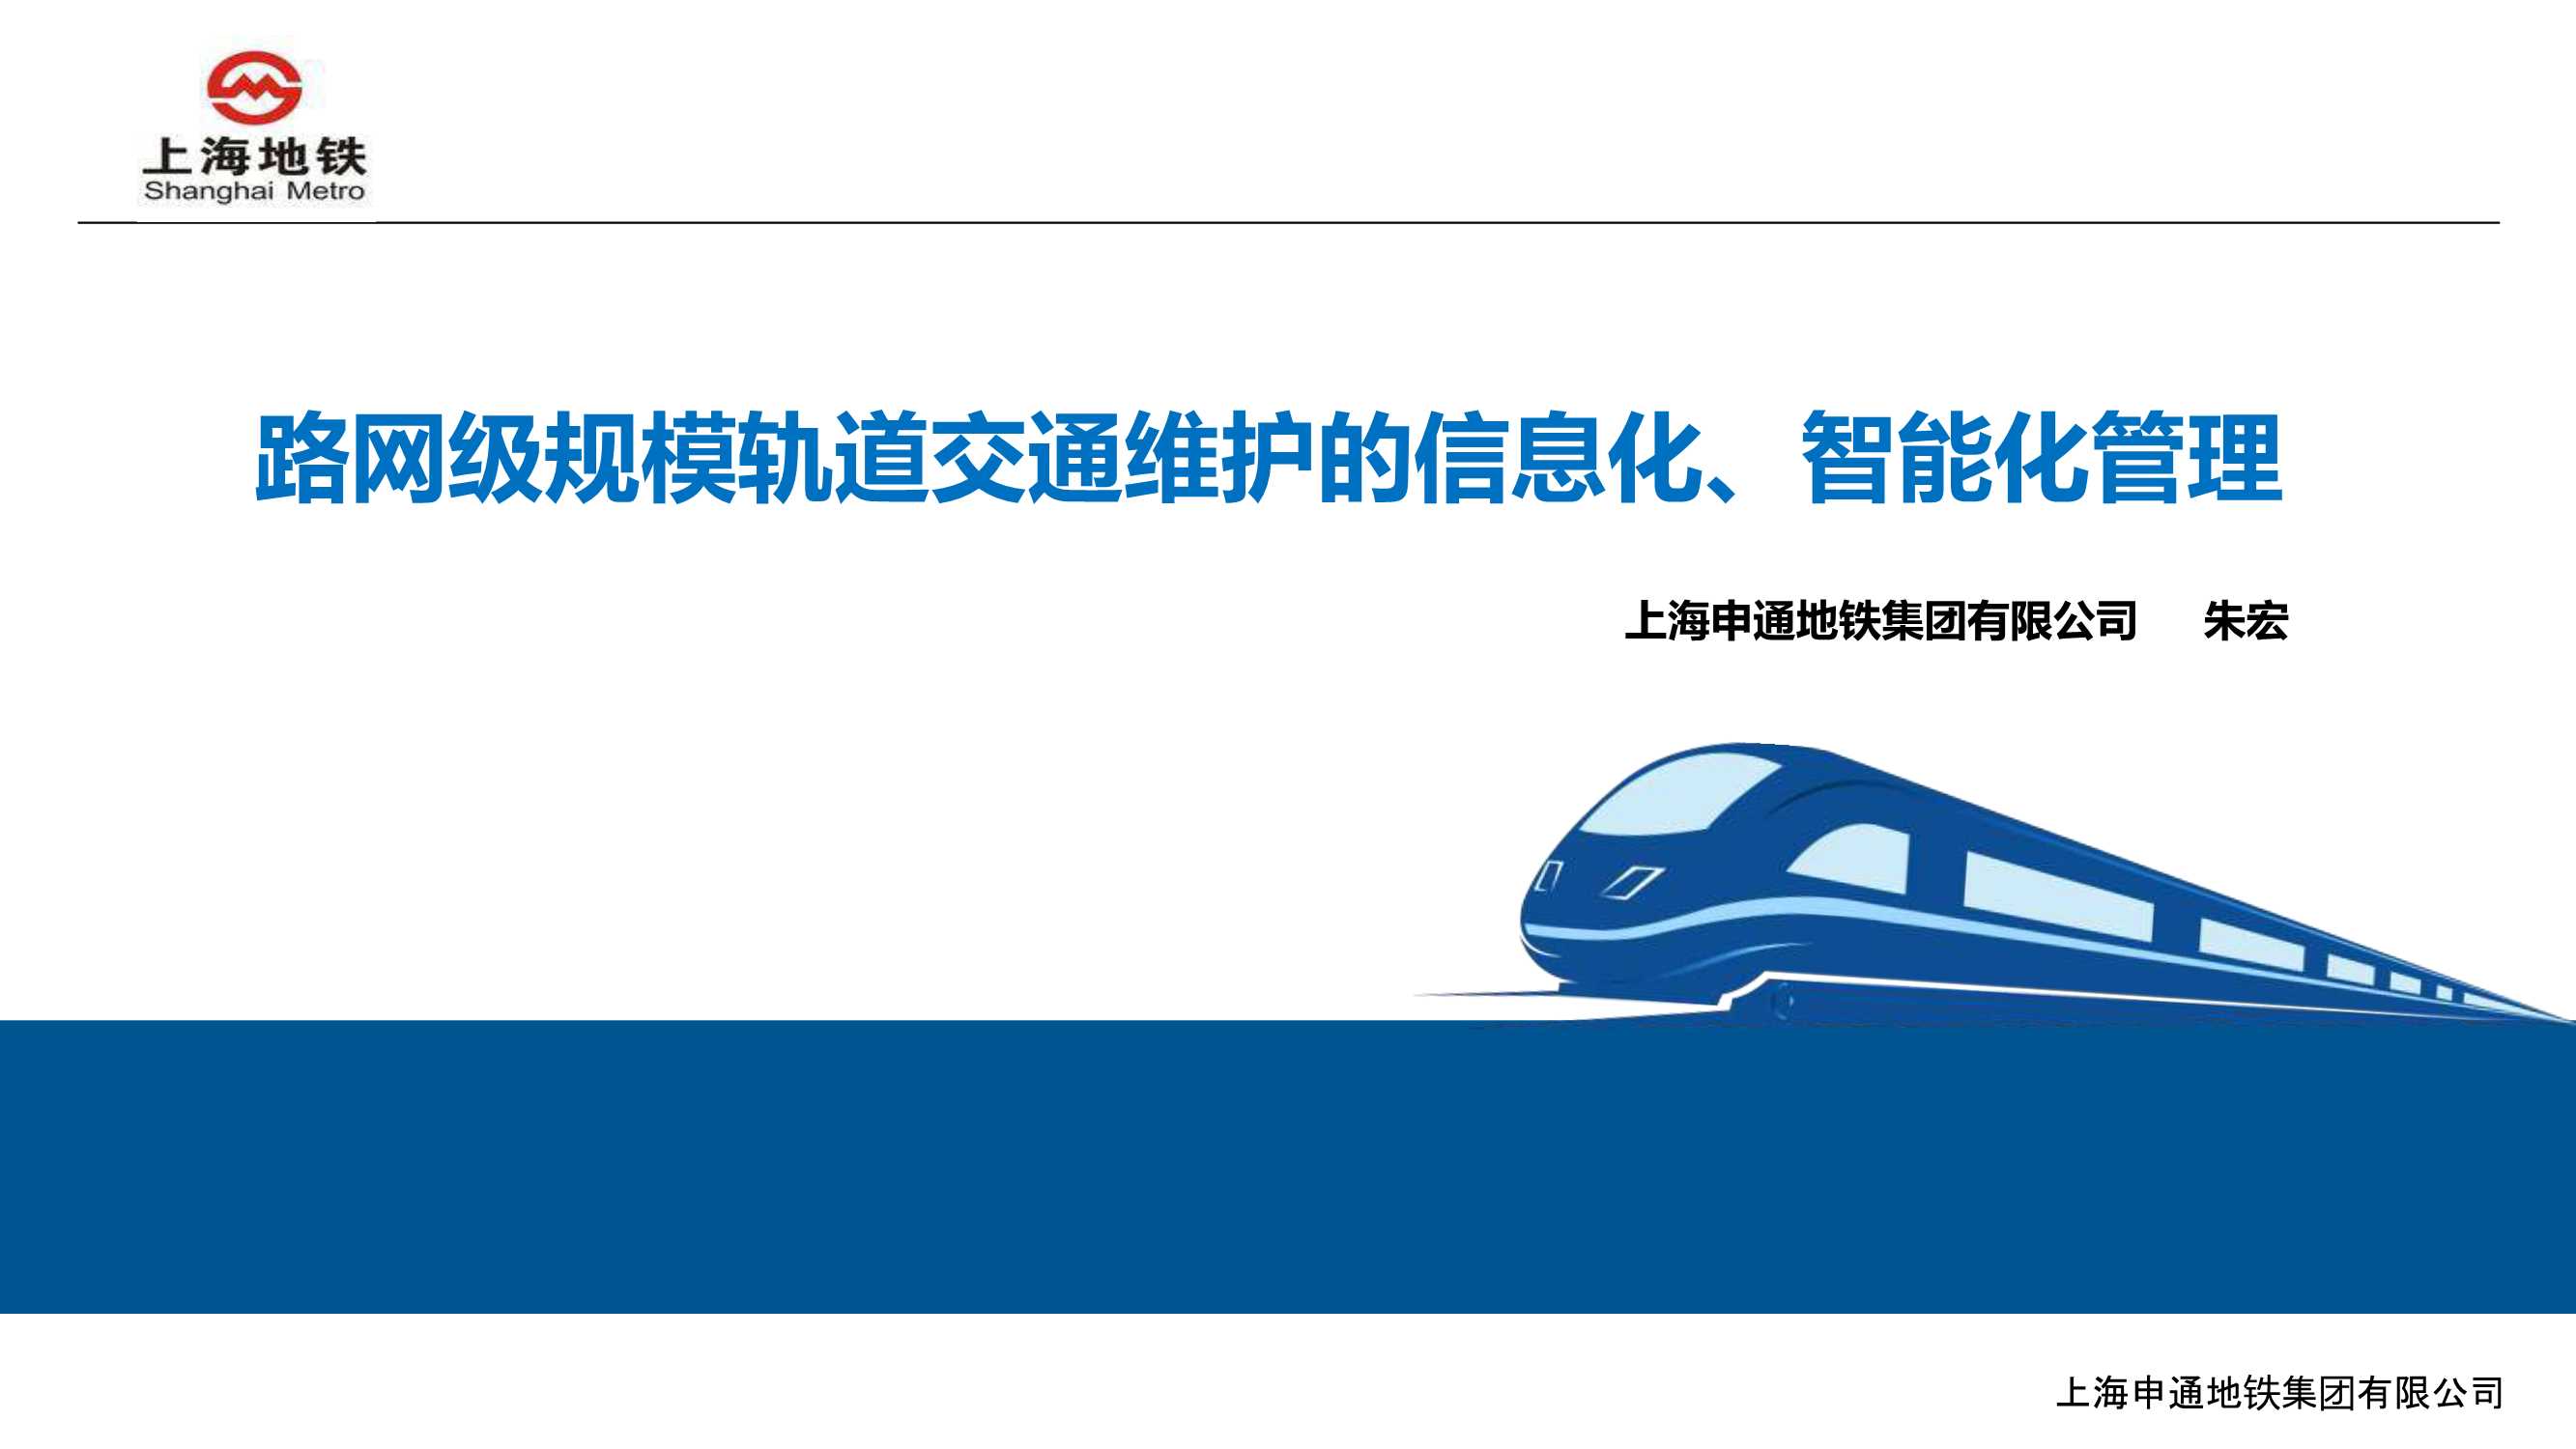 路网级规模轨道交通维护的信息化、智能化管理——上海申通地铁集团 朱宏-2016.09-30页